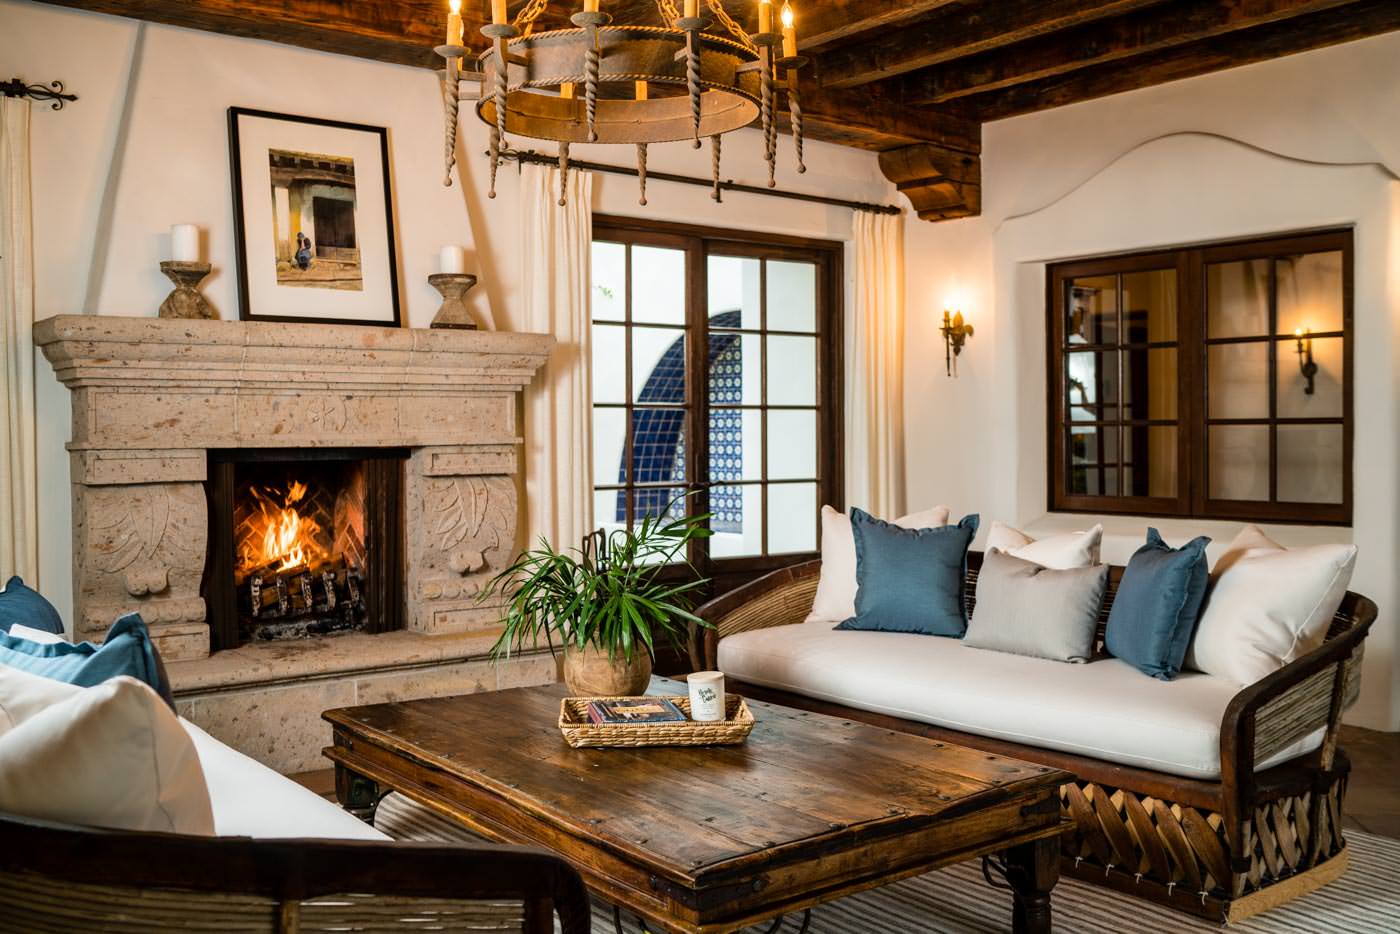 17515 Avendia De Acacias - Interior of Mansion Living Room with Fireplace